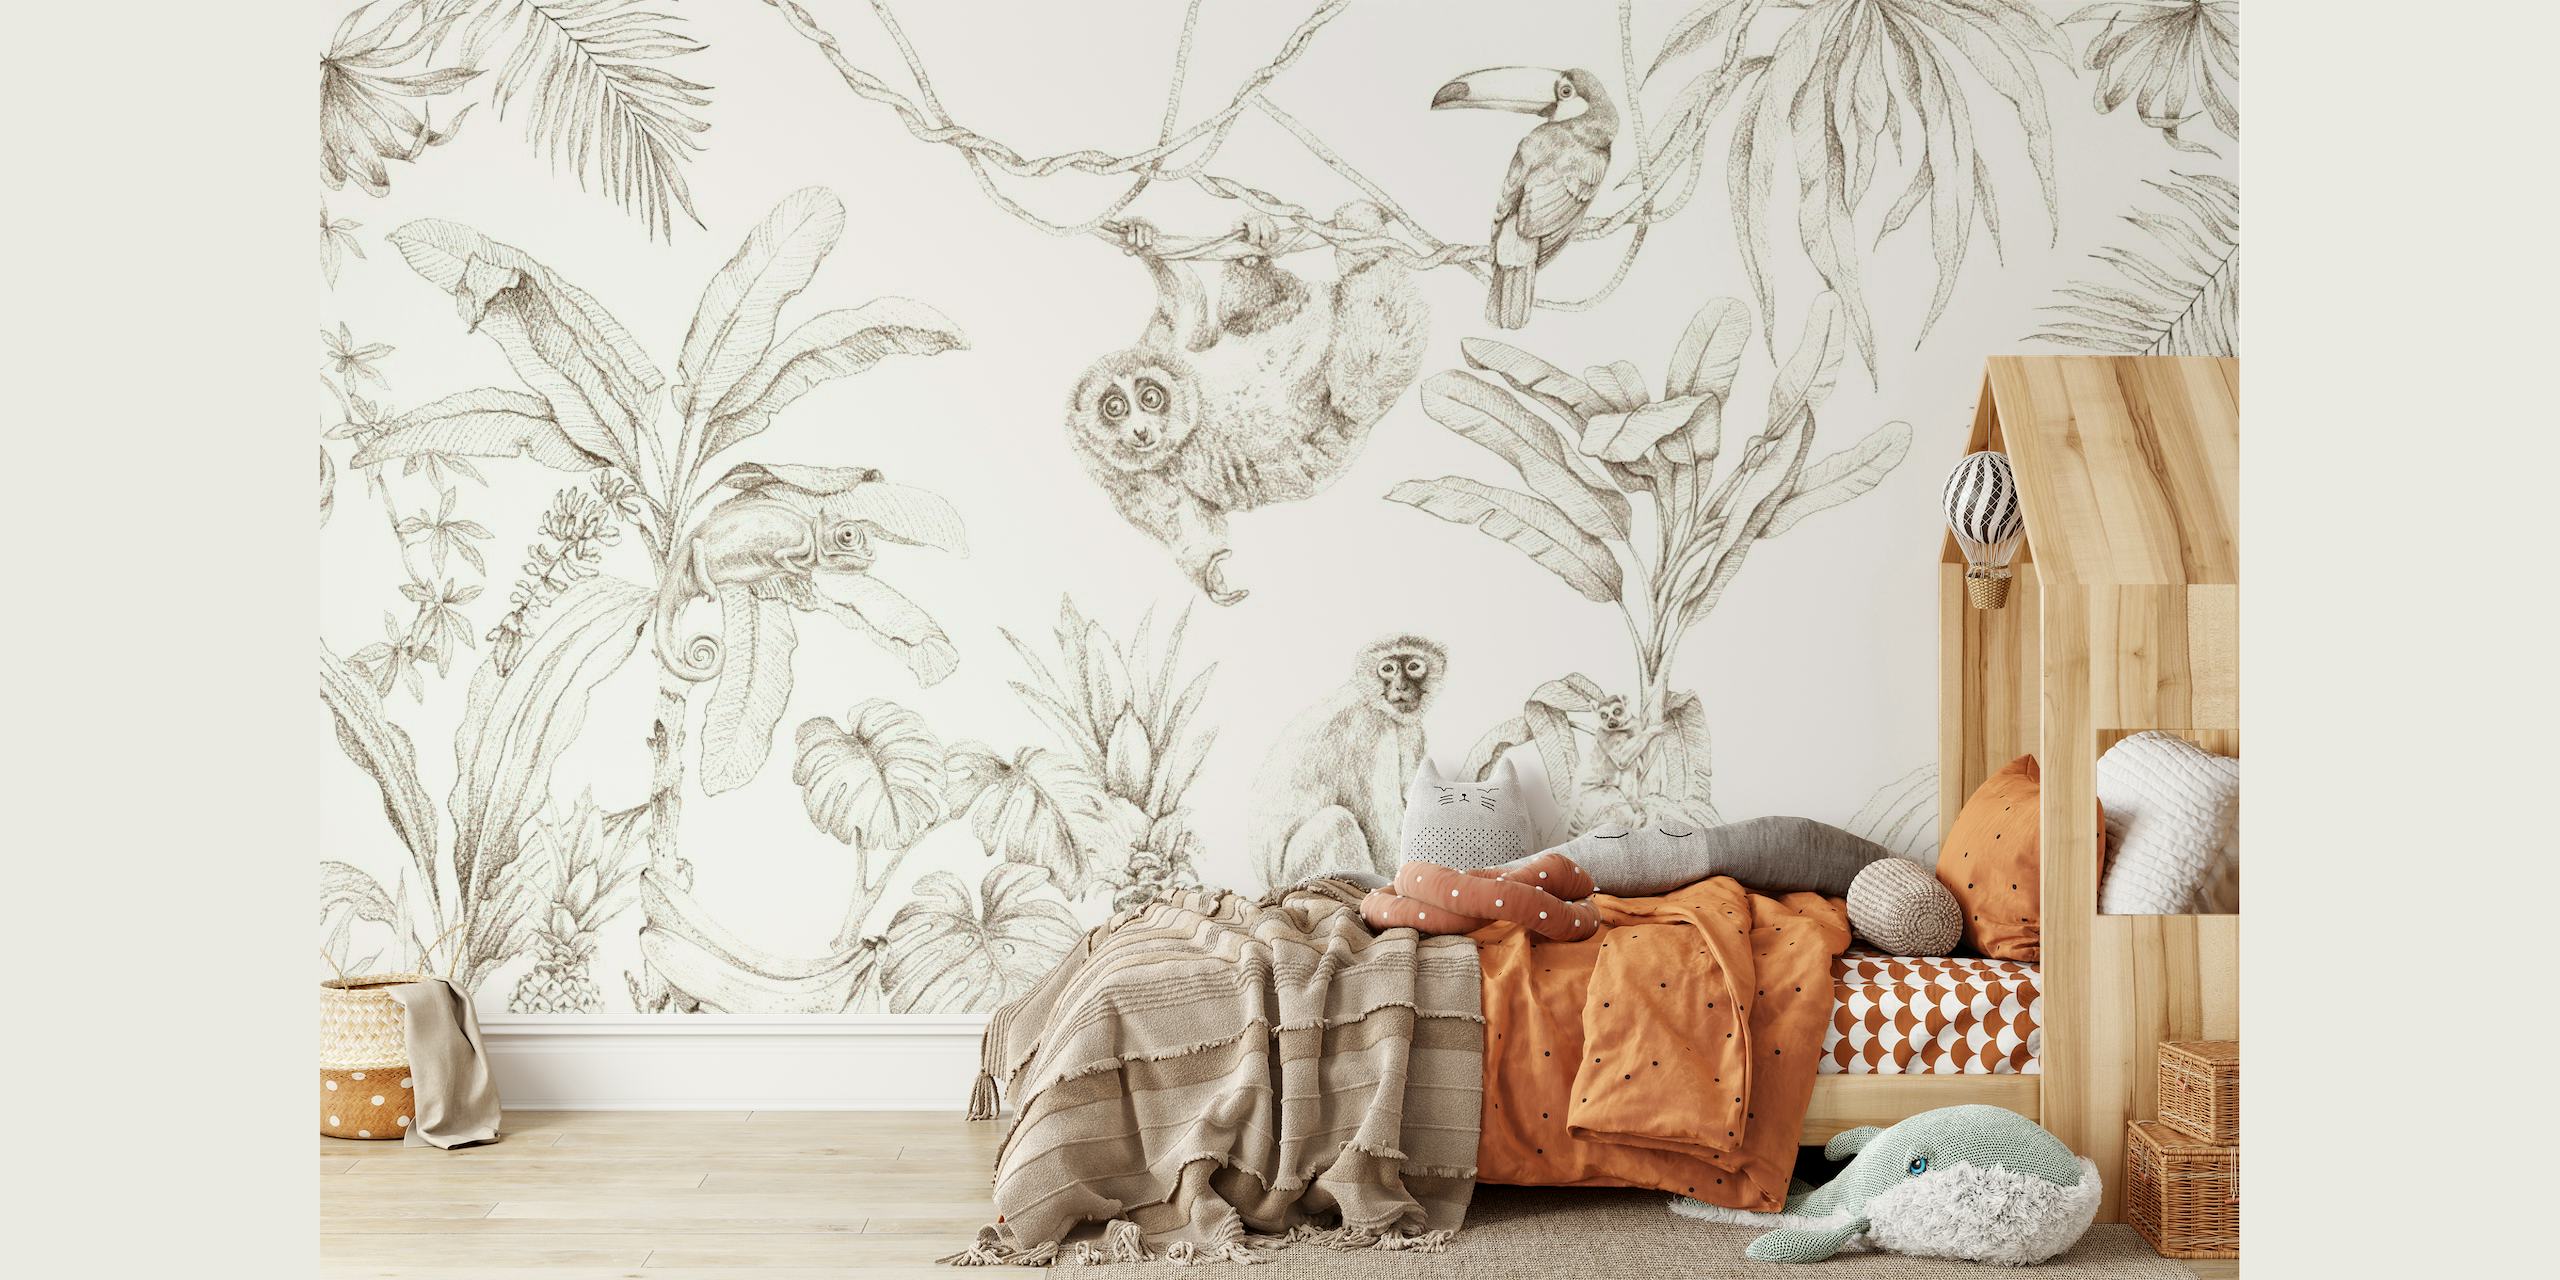 Murale de style croquis représentant la faune africaine et les plantes tropicales